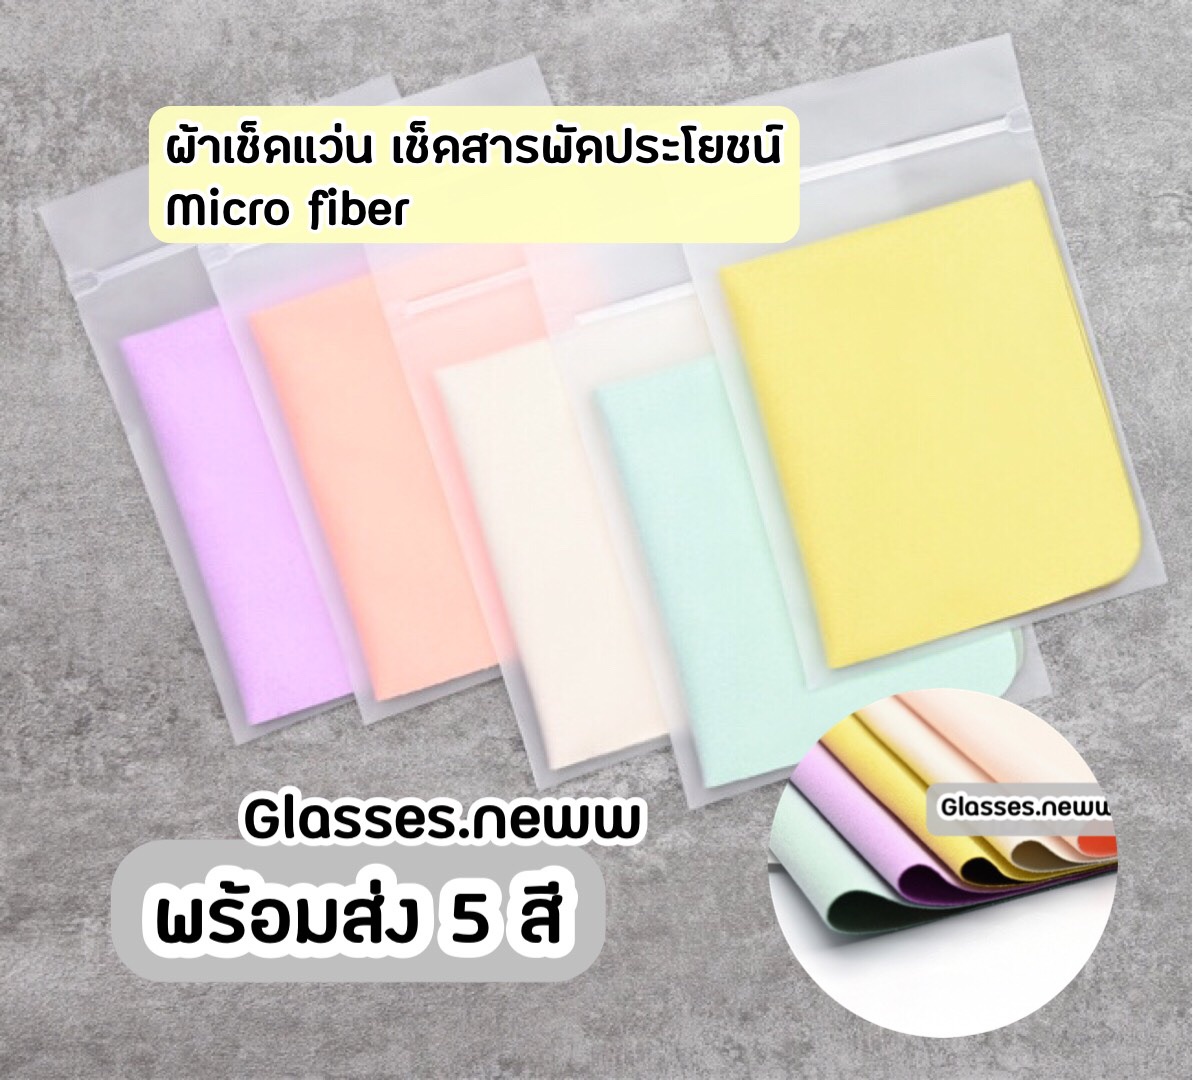 ผ้าเช็ดแว่น เช็ดอุปกรณ์อิเล็กทรอนิกส์ Micro fiber เกรดดี❗️สีสวยพร้อมส่ง 5 สี